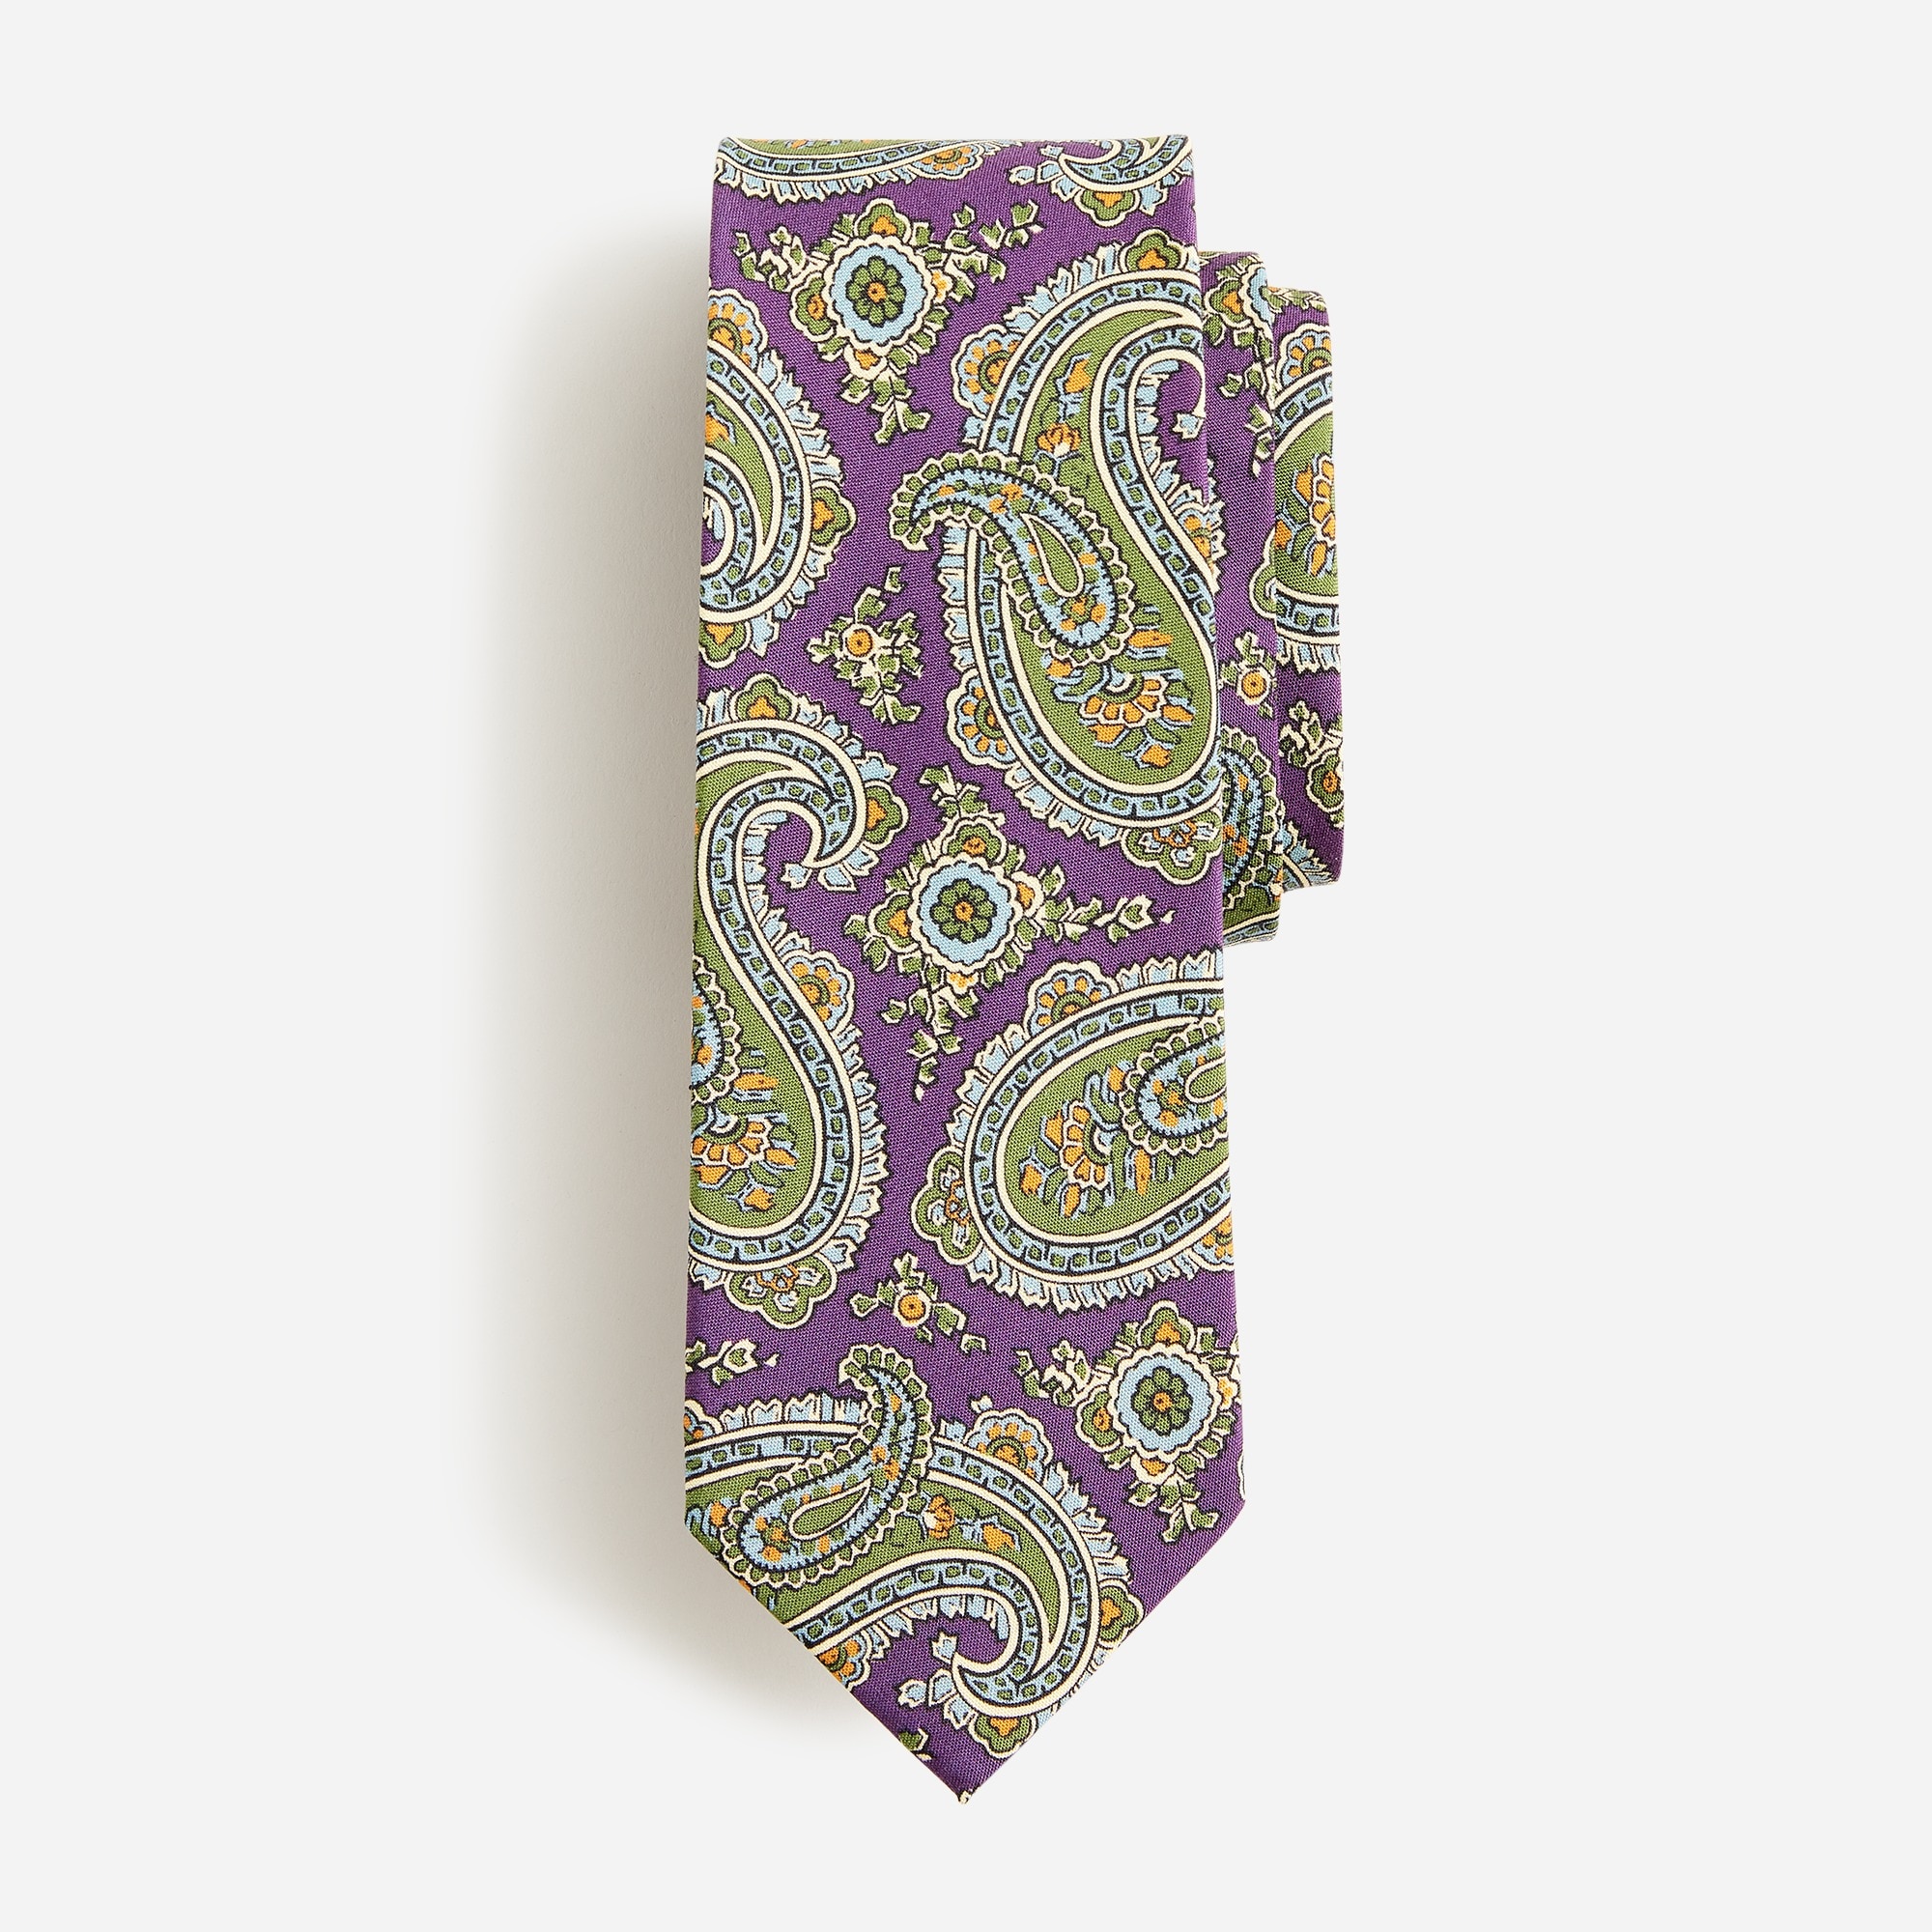 Jcrew Italian silk tie in paisley